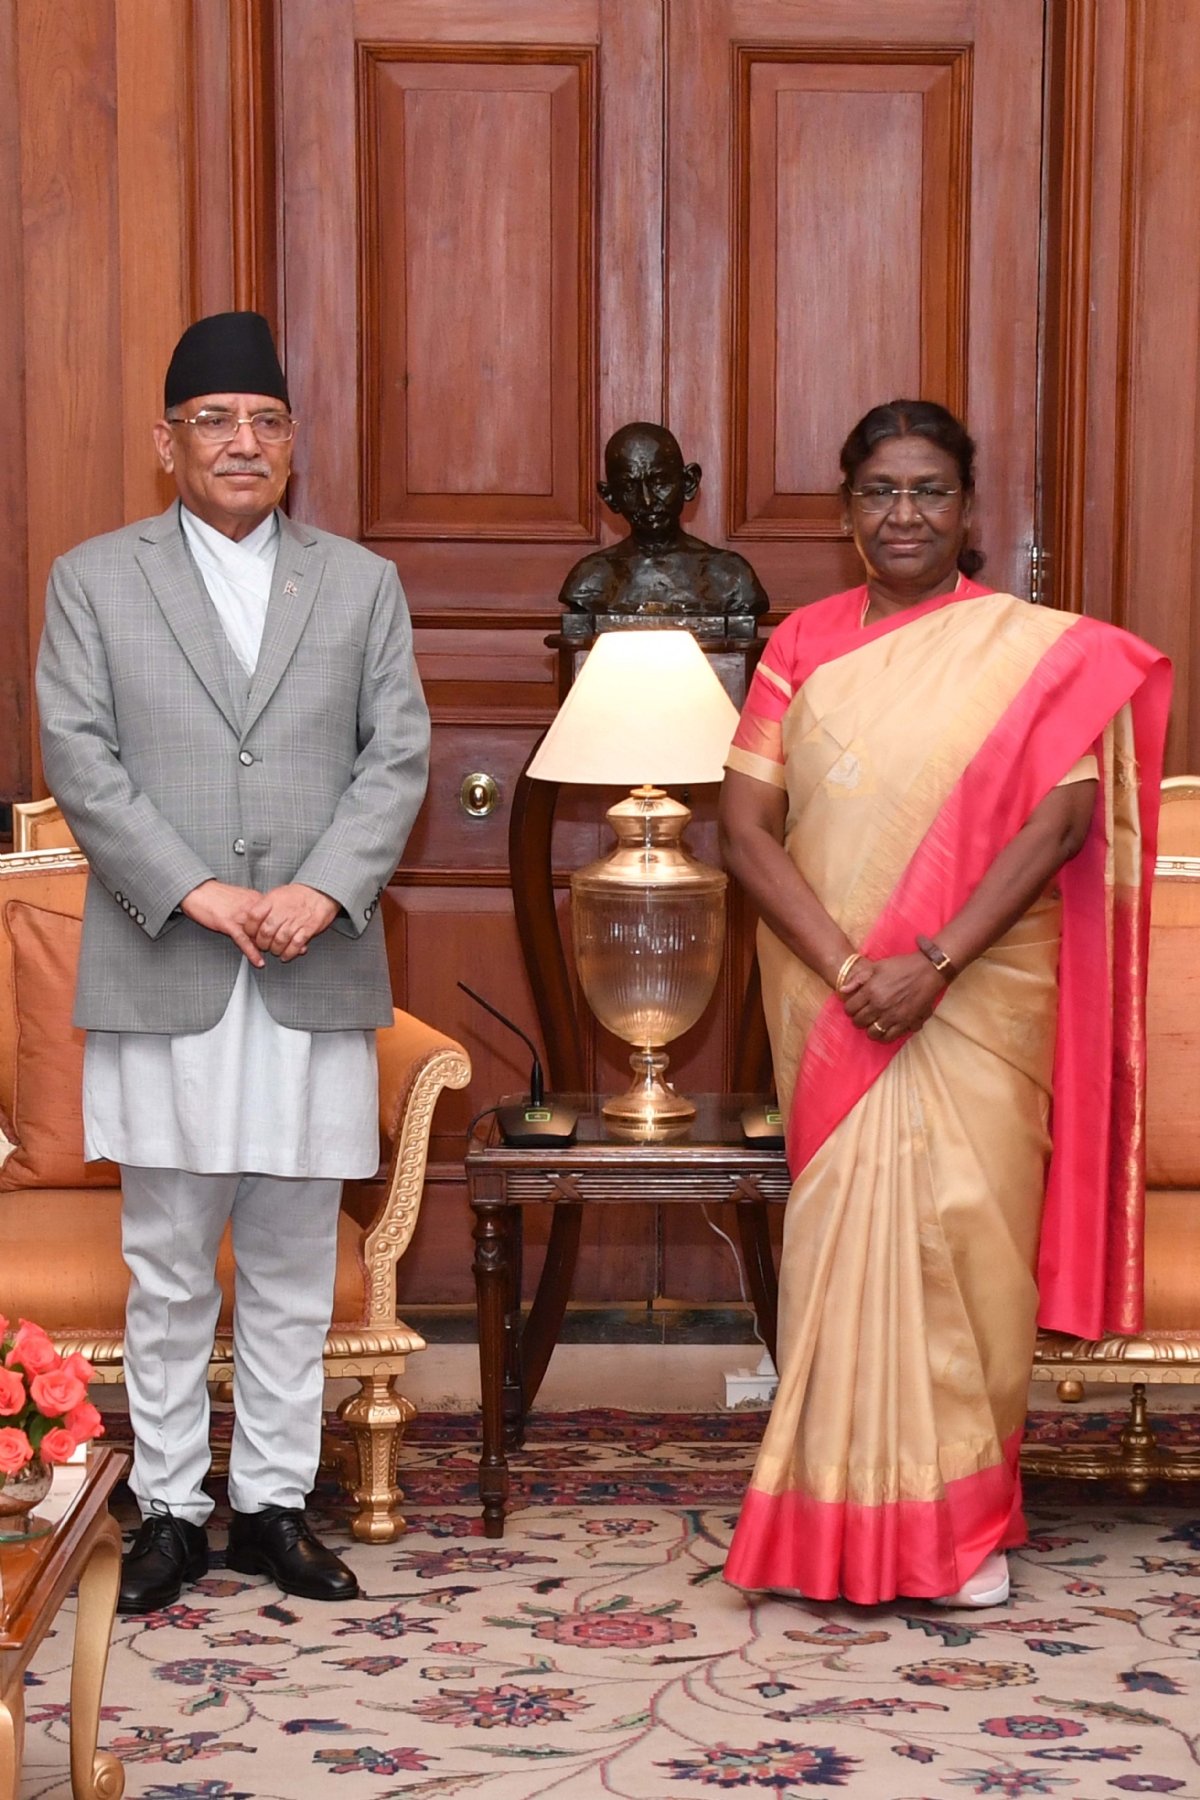  नई दिल्ली में गुरुवार 1 जून को राष्ट्रपति द्रौपदी मुरमू मुलाकात करते नेपाल के प्रधानमंत्री पुष्प कमल दहल 'प्रचंड। हिंदुस्थान समाचार/ फोटो गणेश बिष्ट